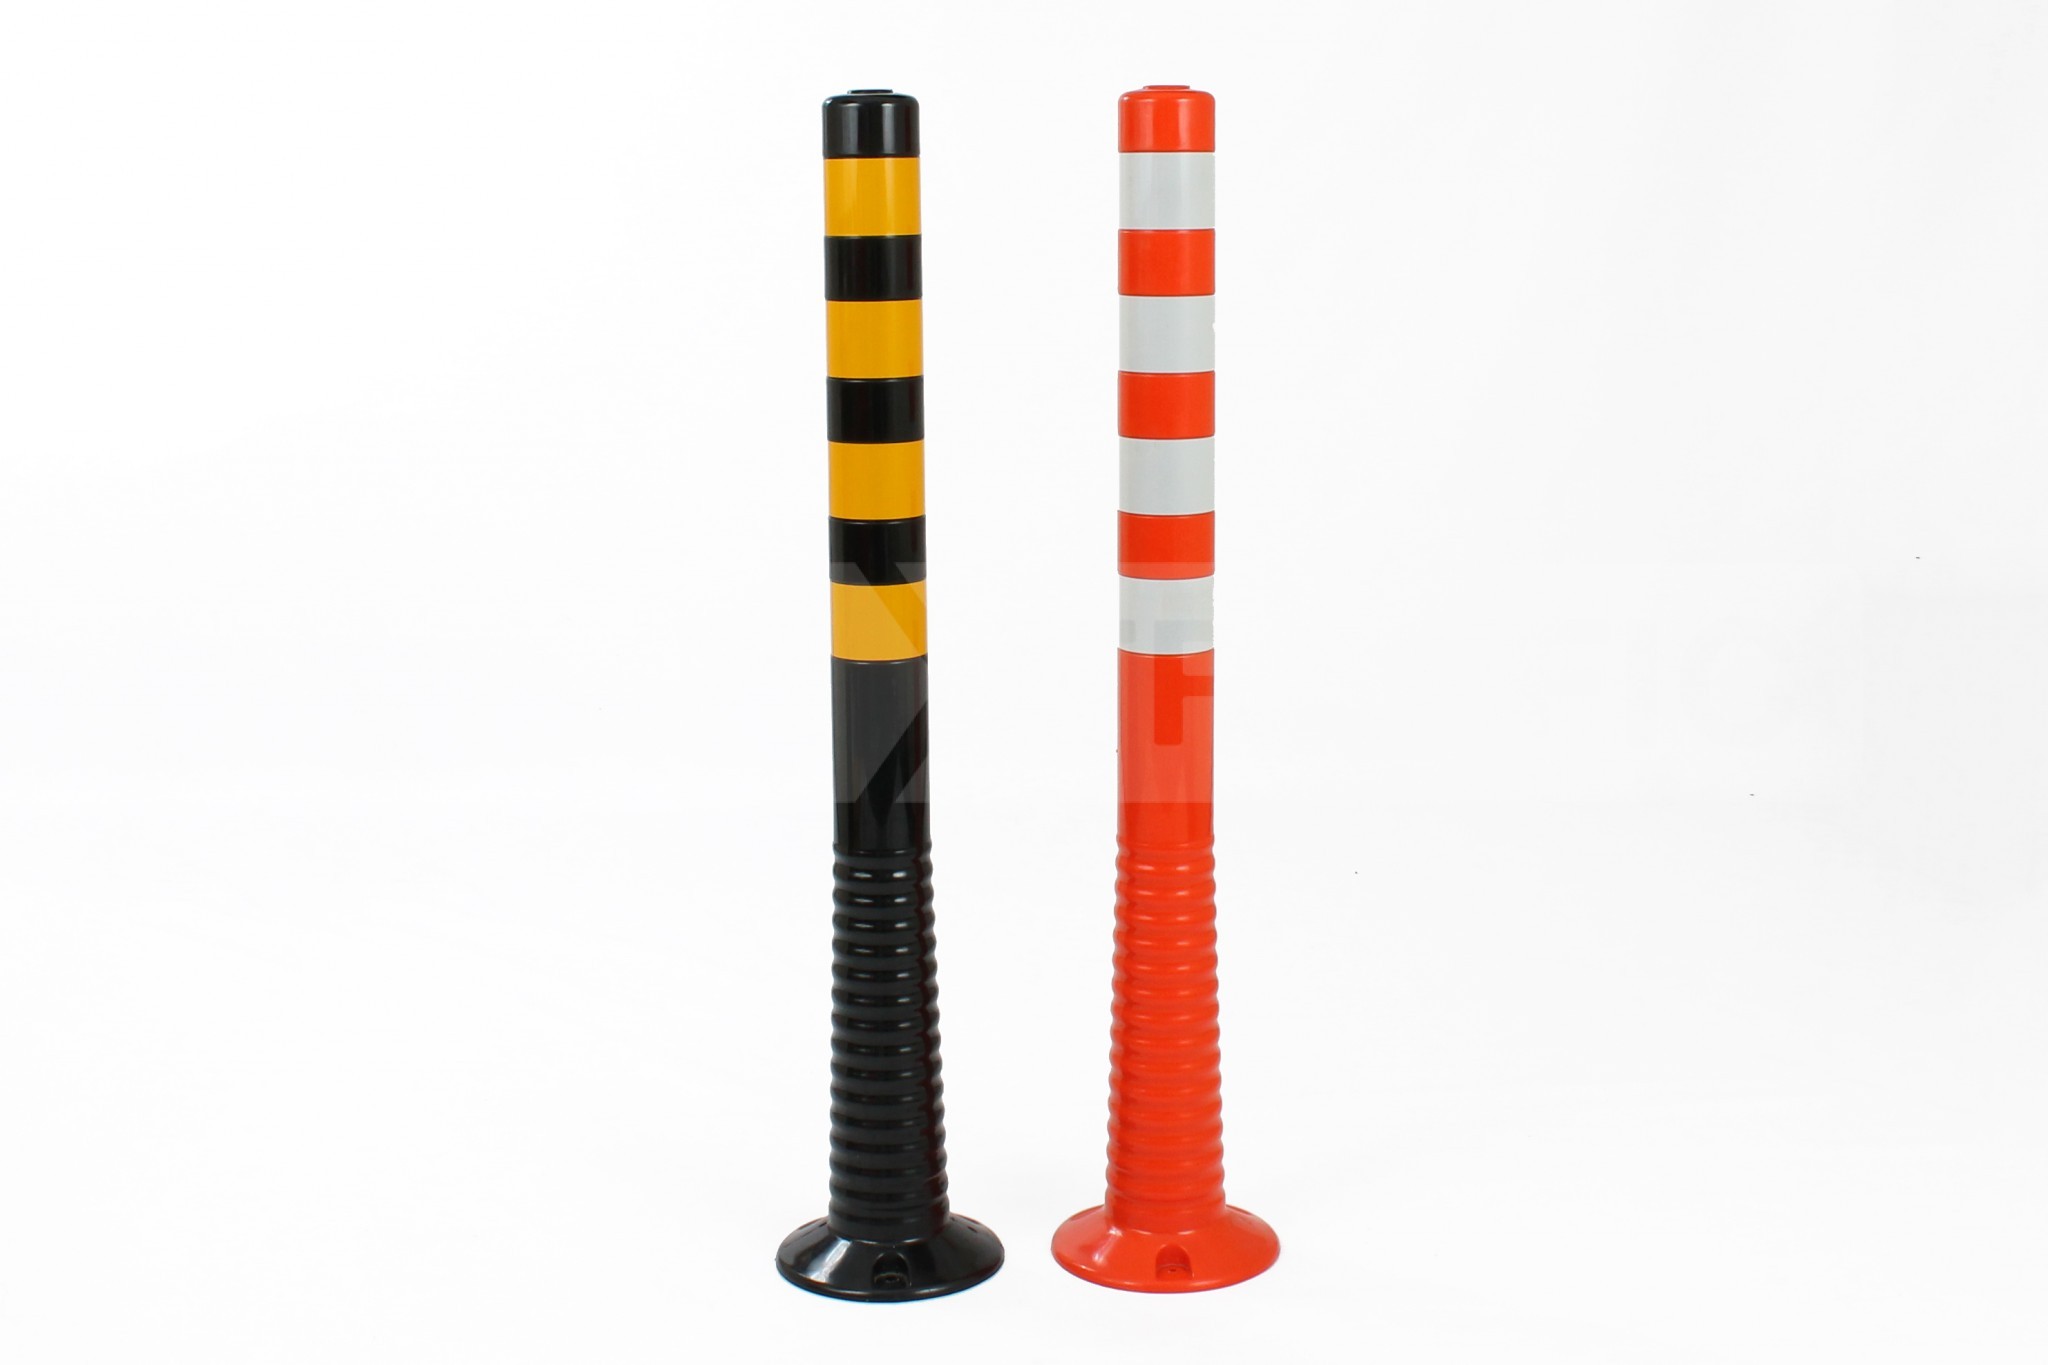 Black and Yellow and Orange and White FlexBrite Bollards.